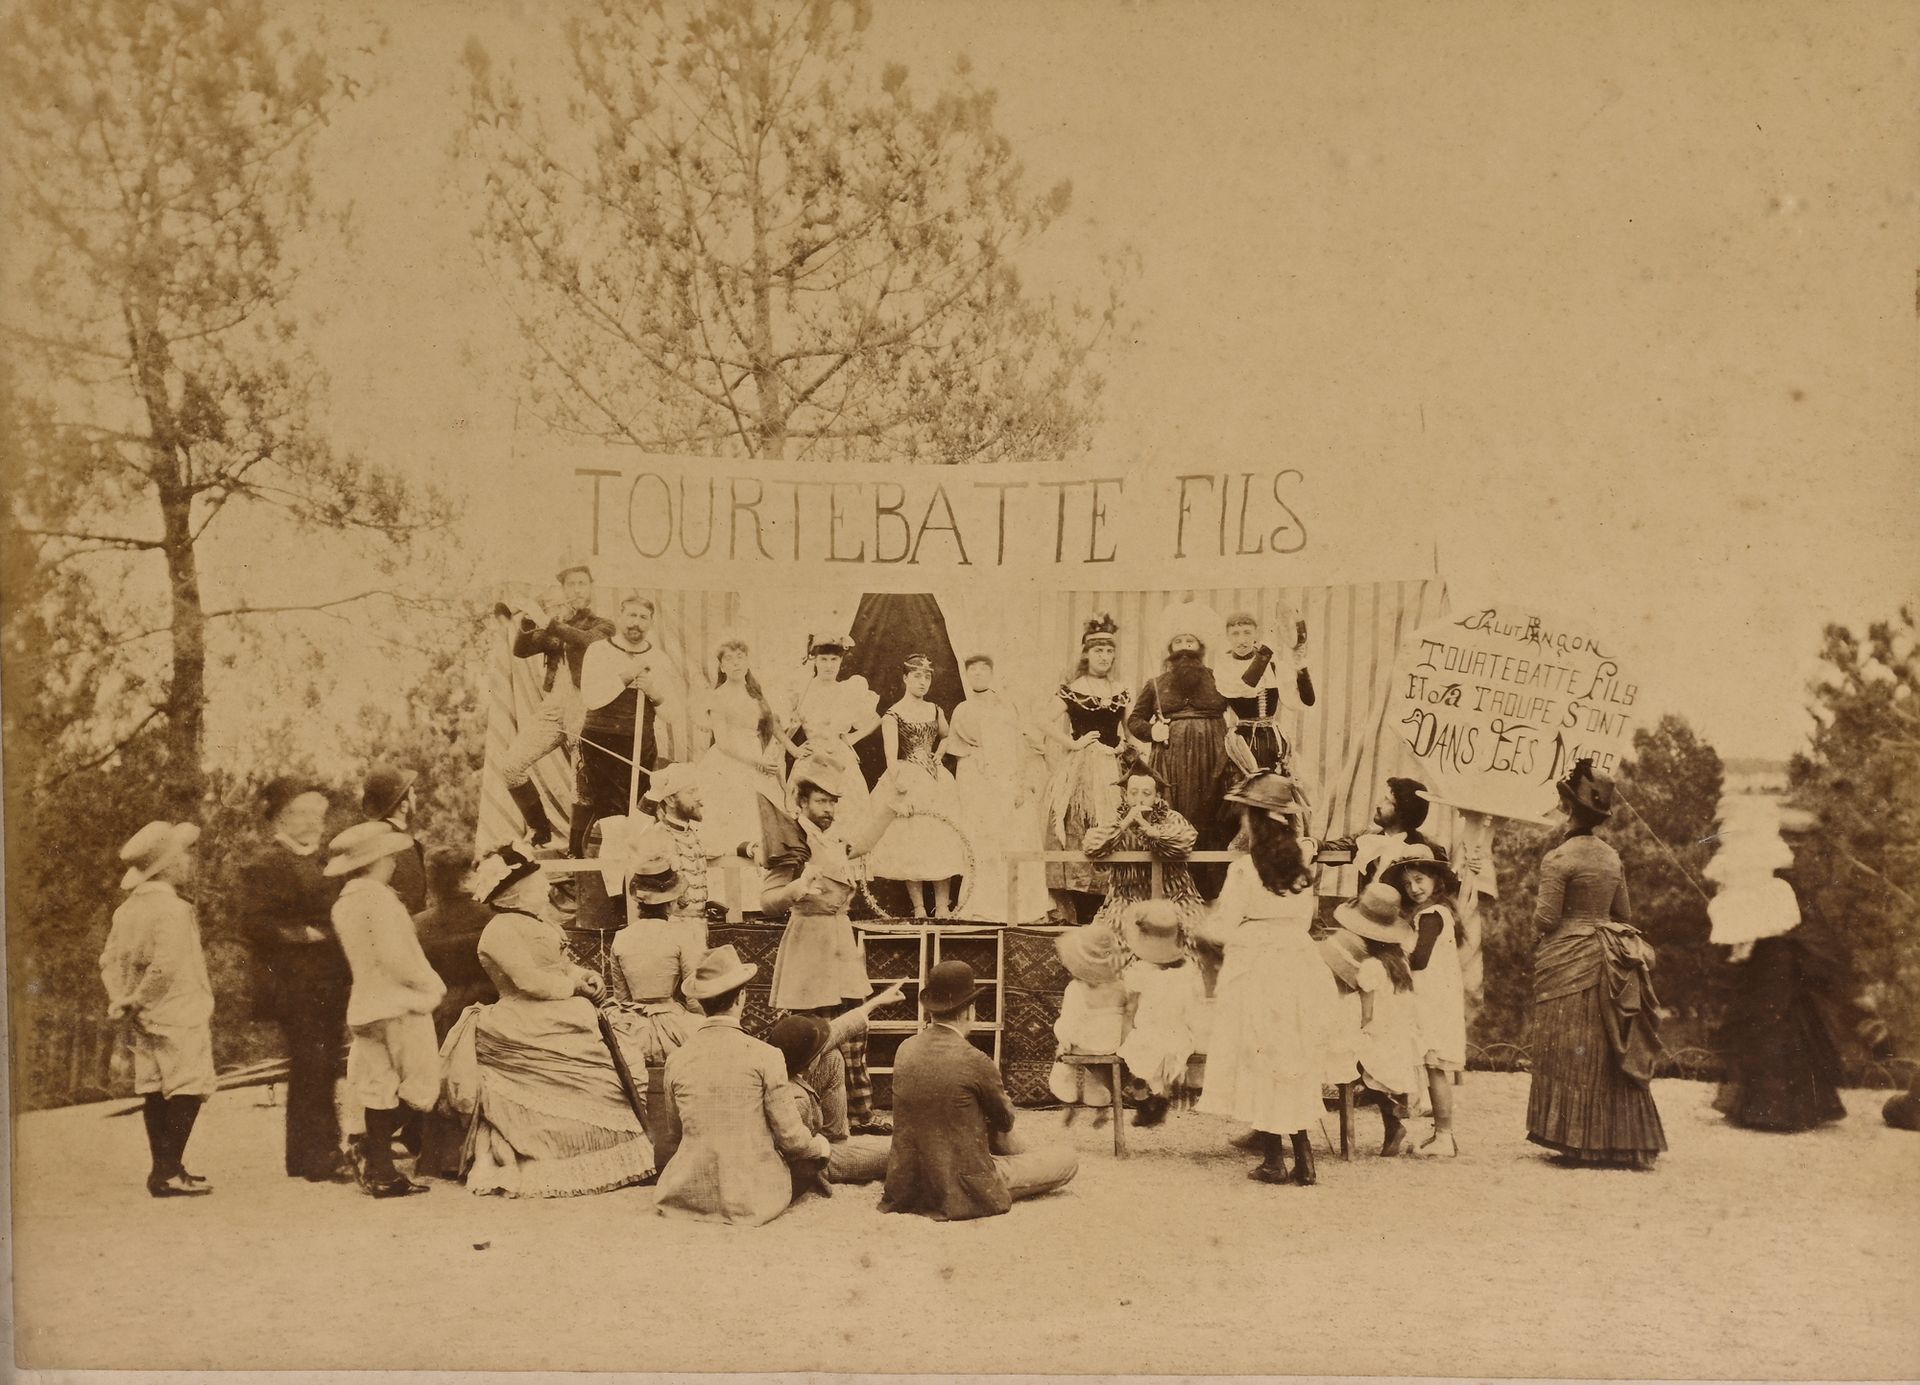 Null ANONYME, France, vers 1880
La troupe Tourtebatte fils, de passage à Rançon &hellip;